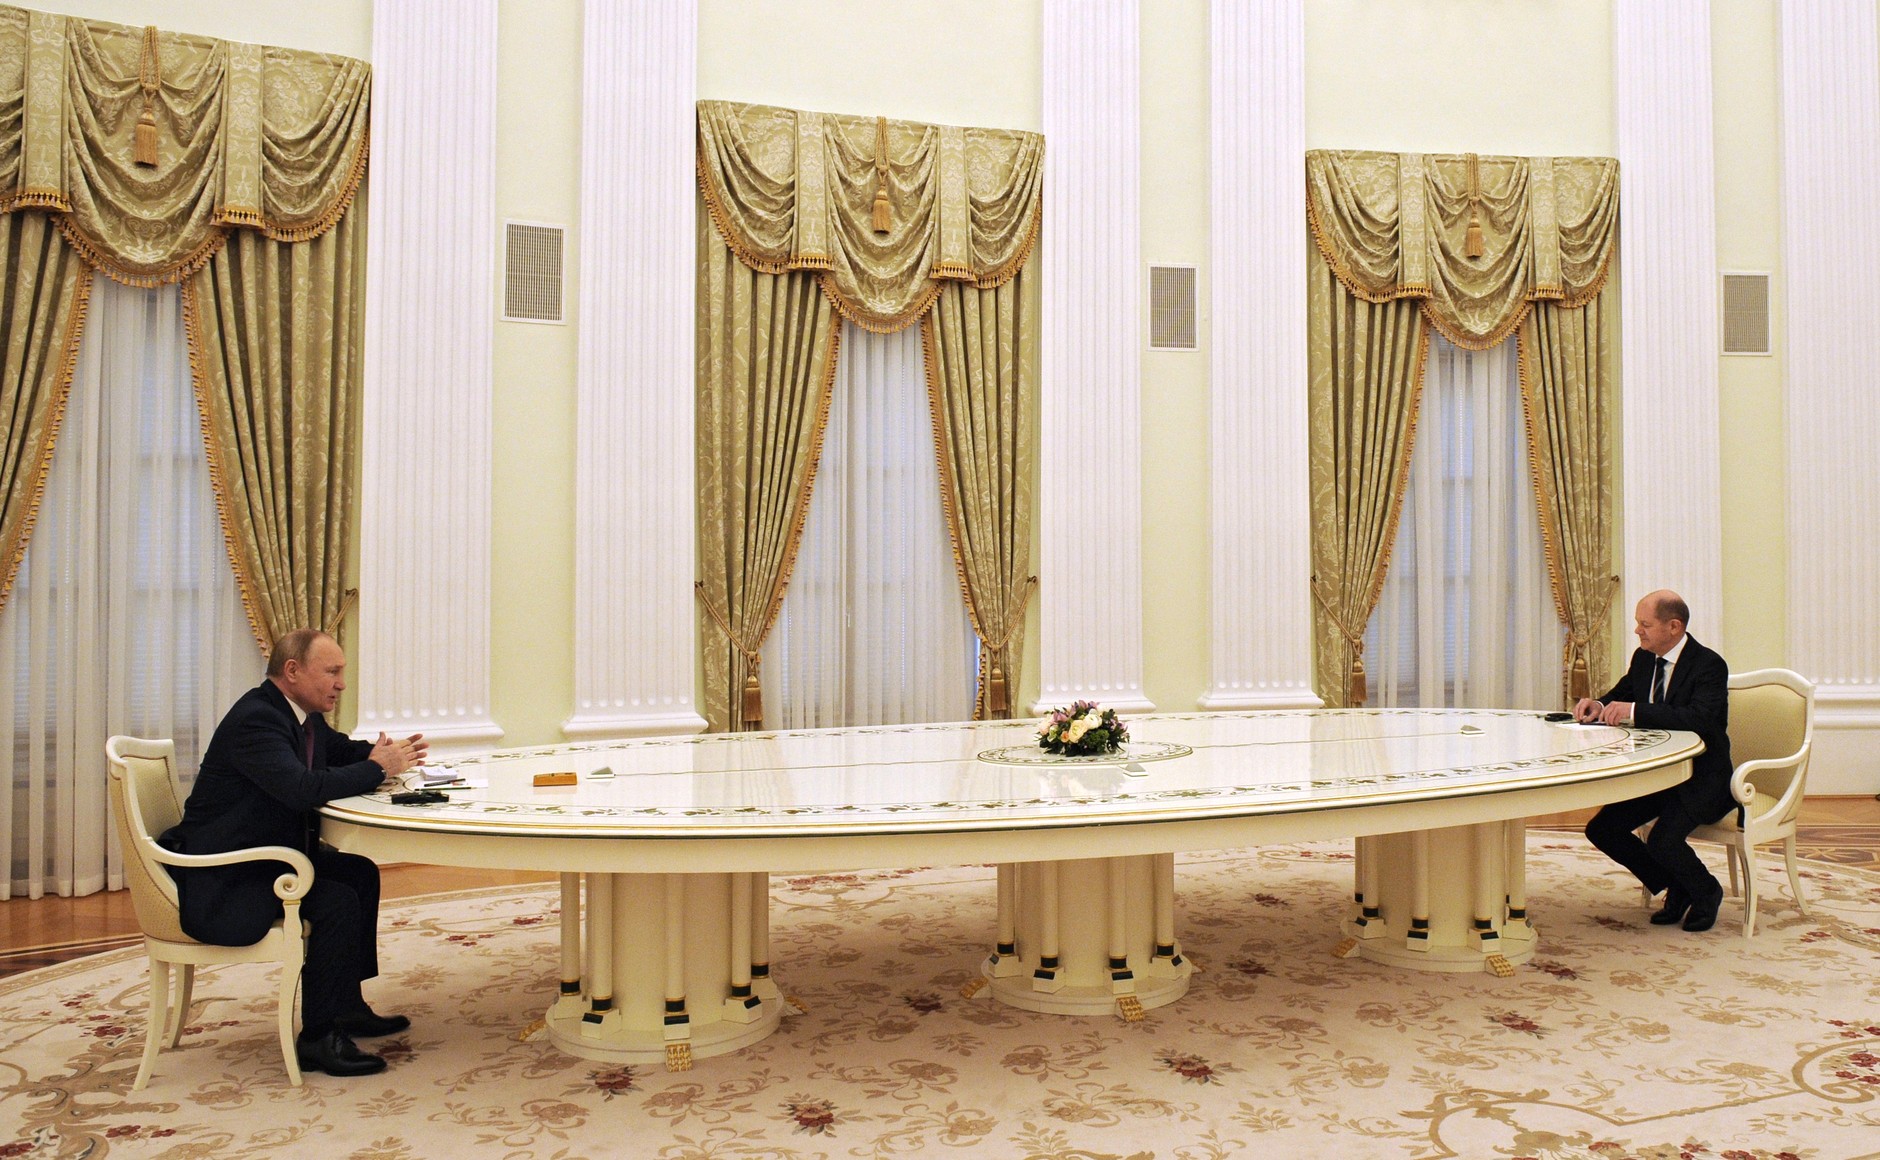 Bild: Kremlin.ru, Putin-Scholz meeting, CC BY 4.0, via Wikimedia Commons, (keine Änderungen vorgenommen)